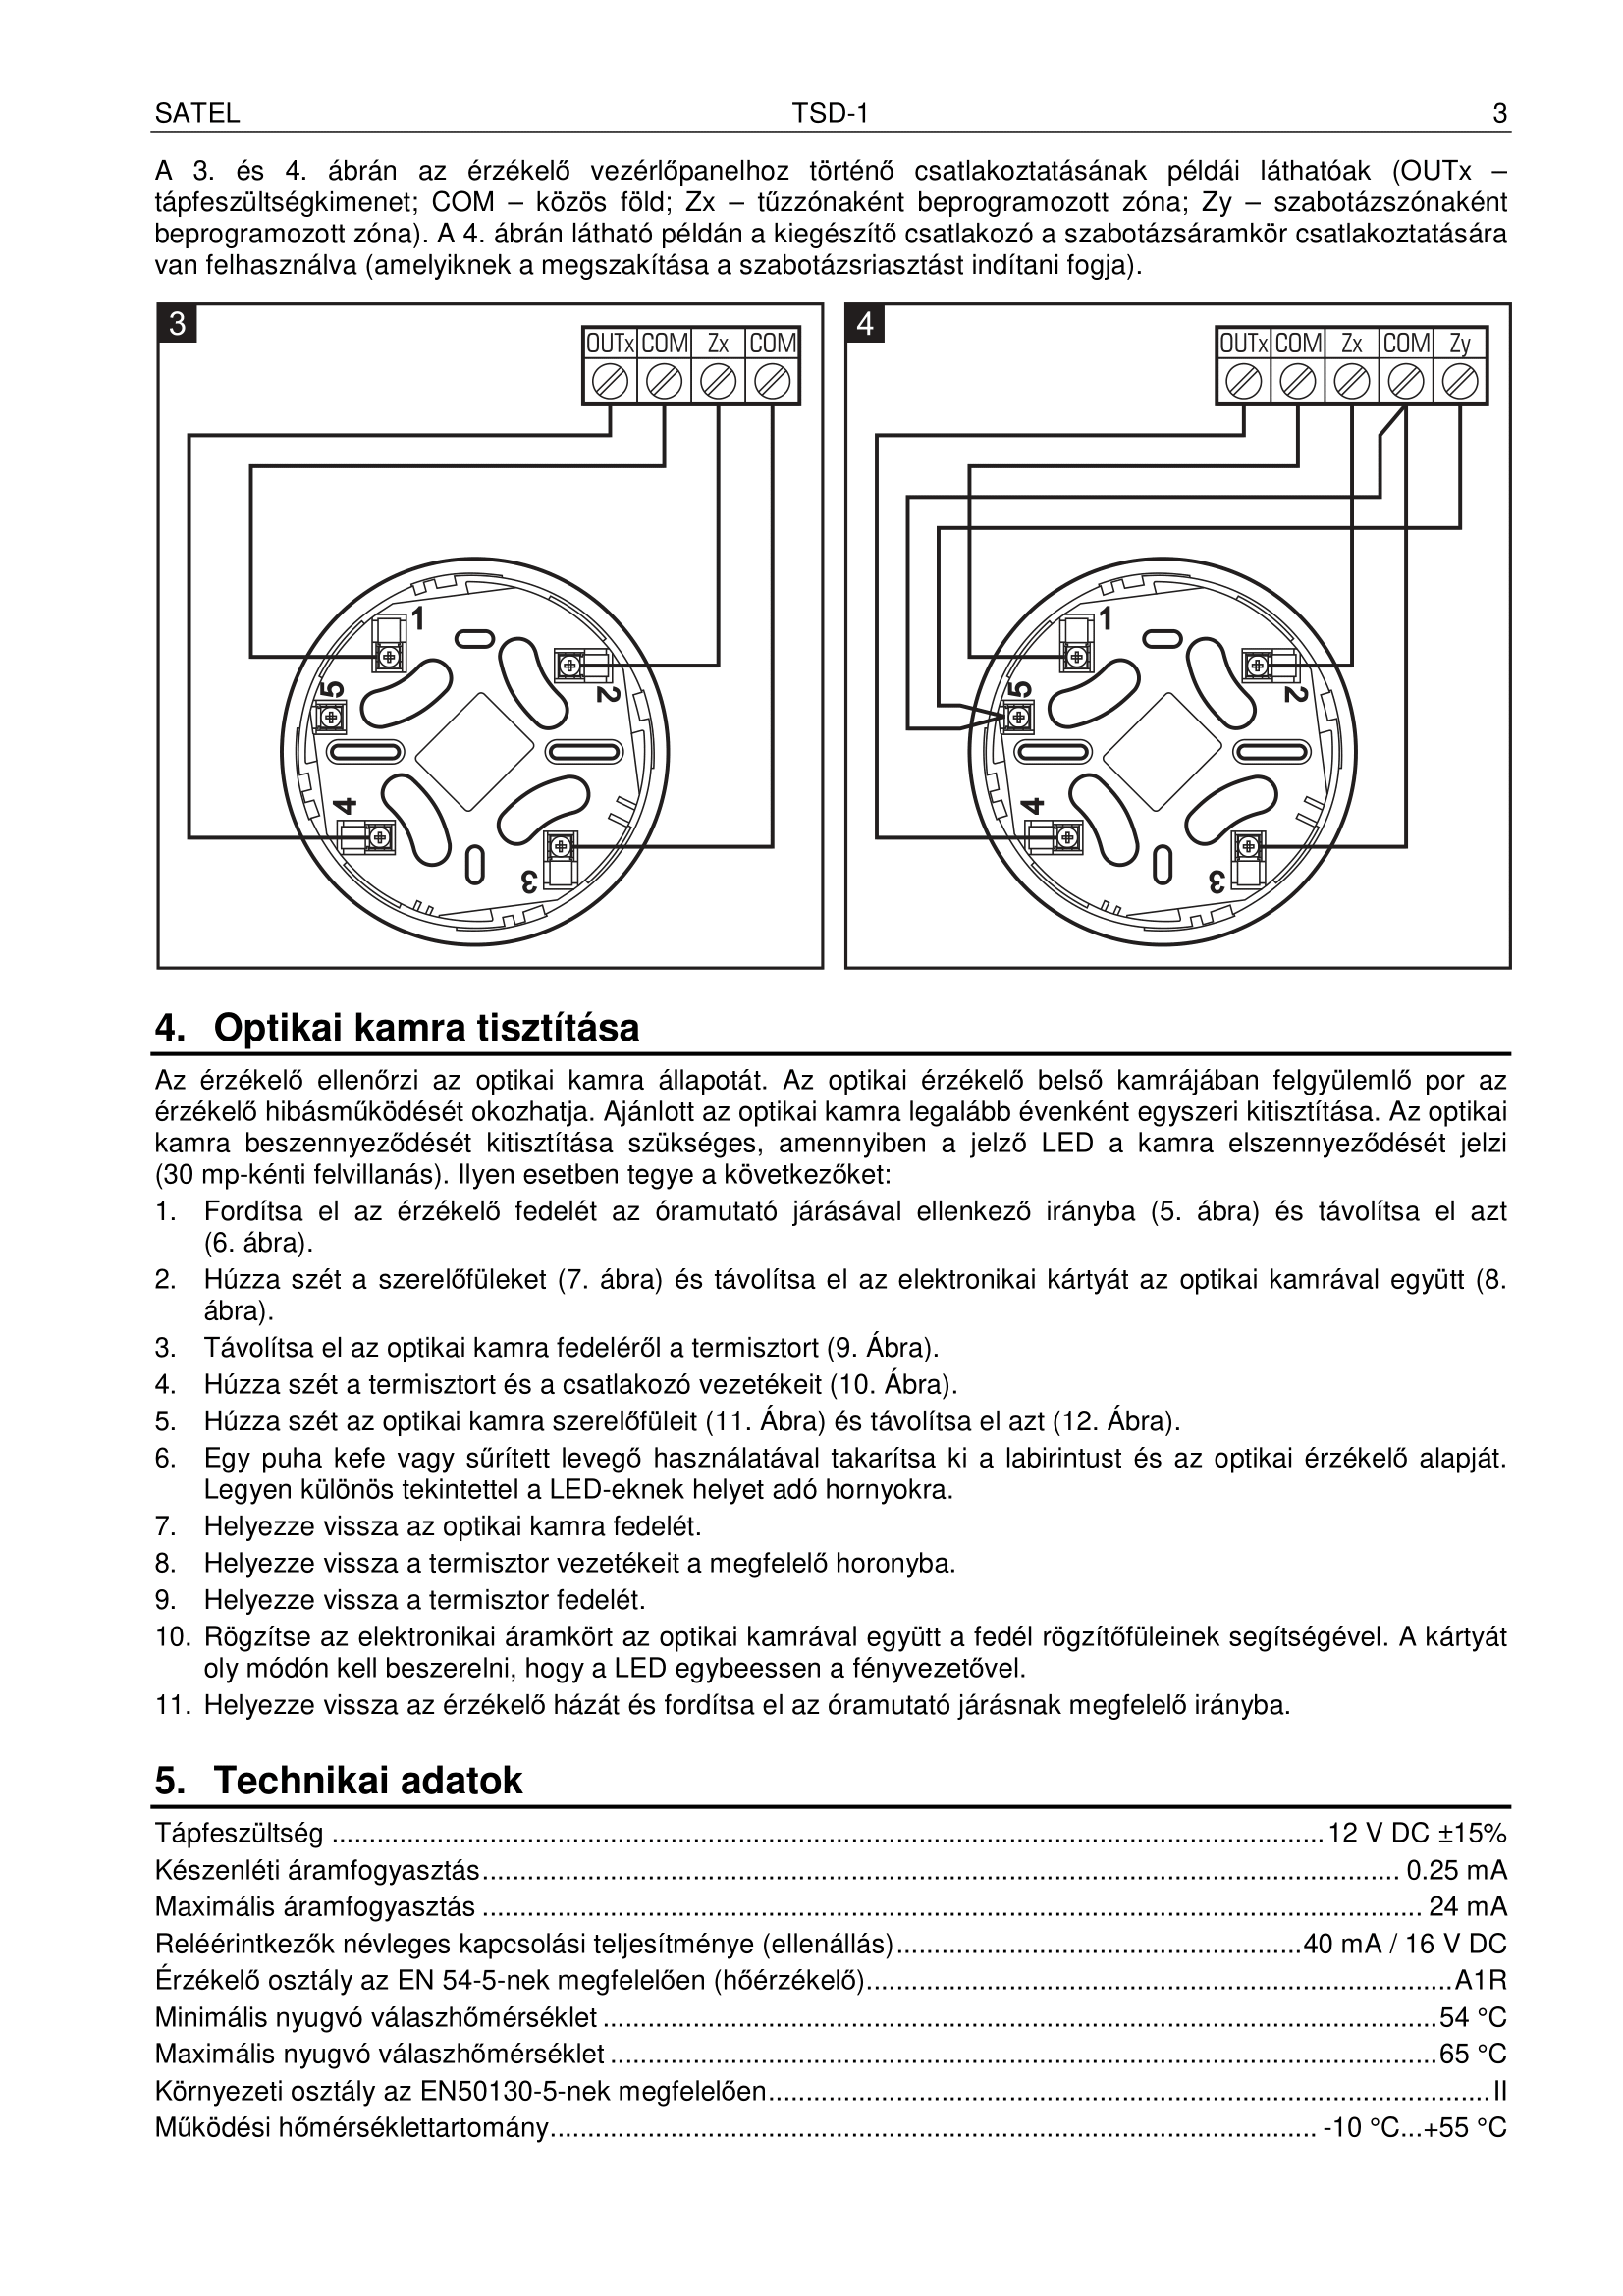 TSD-1 manual page3